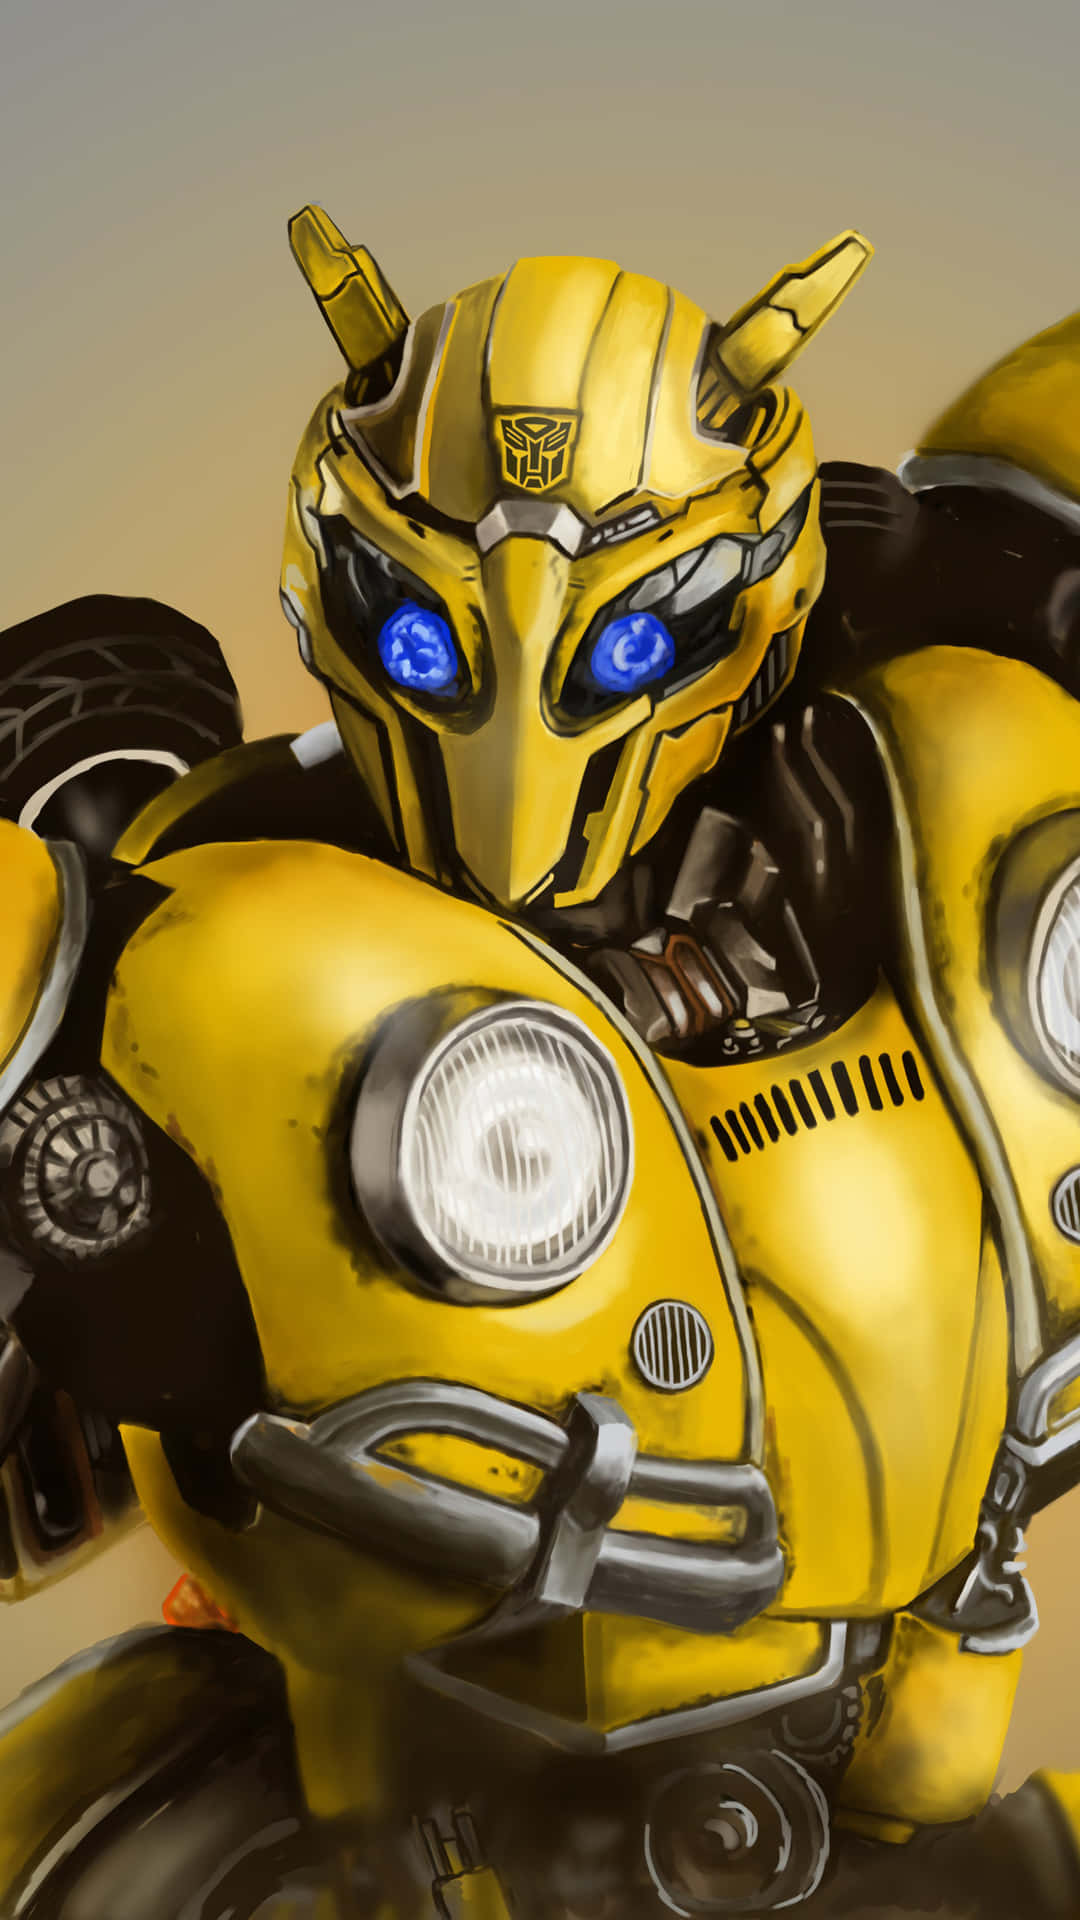 En gul robot med blå øjne